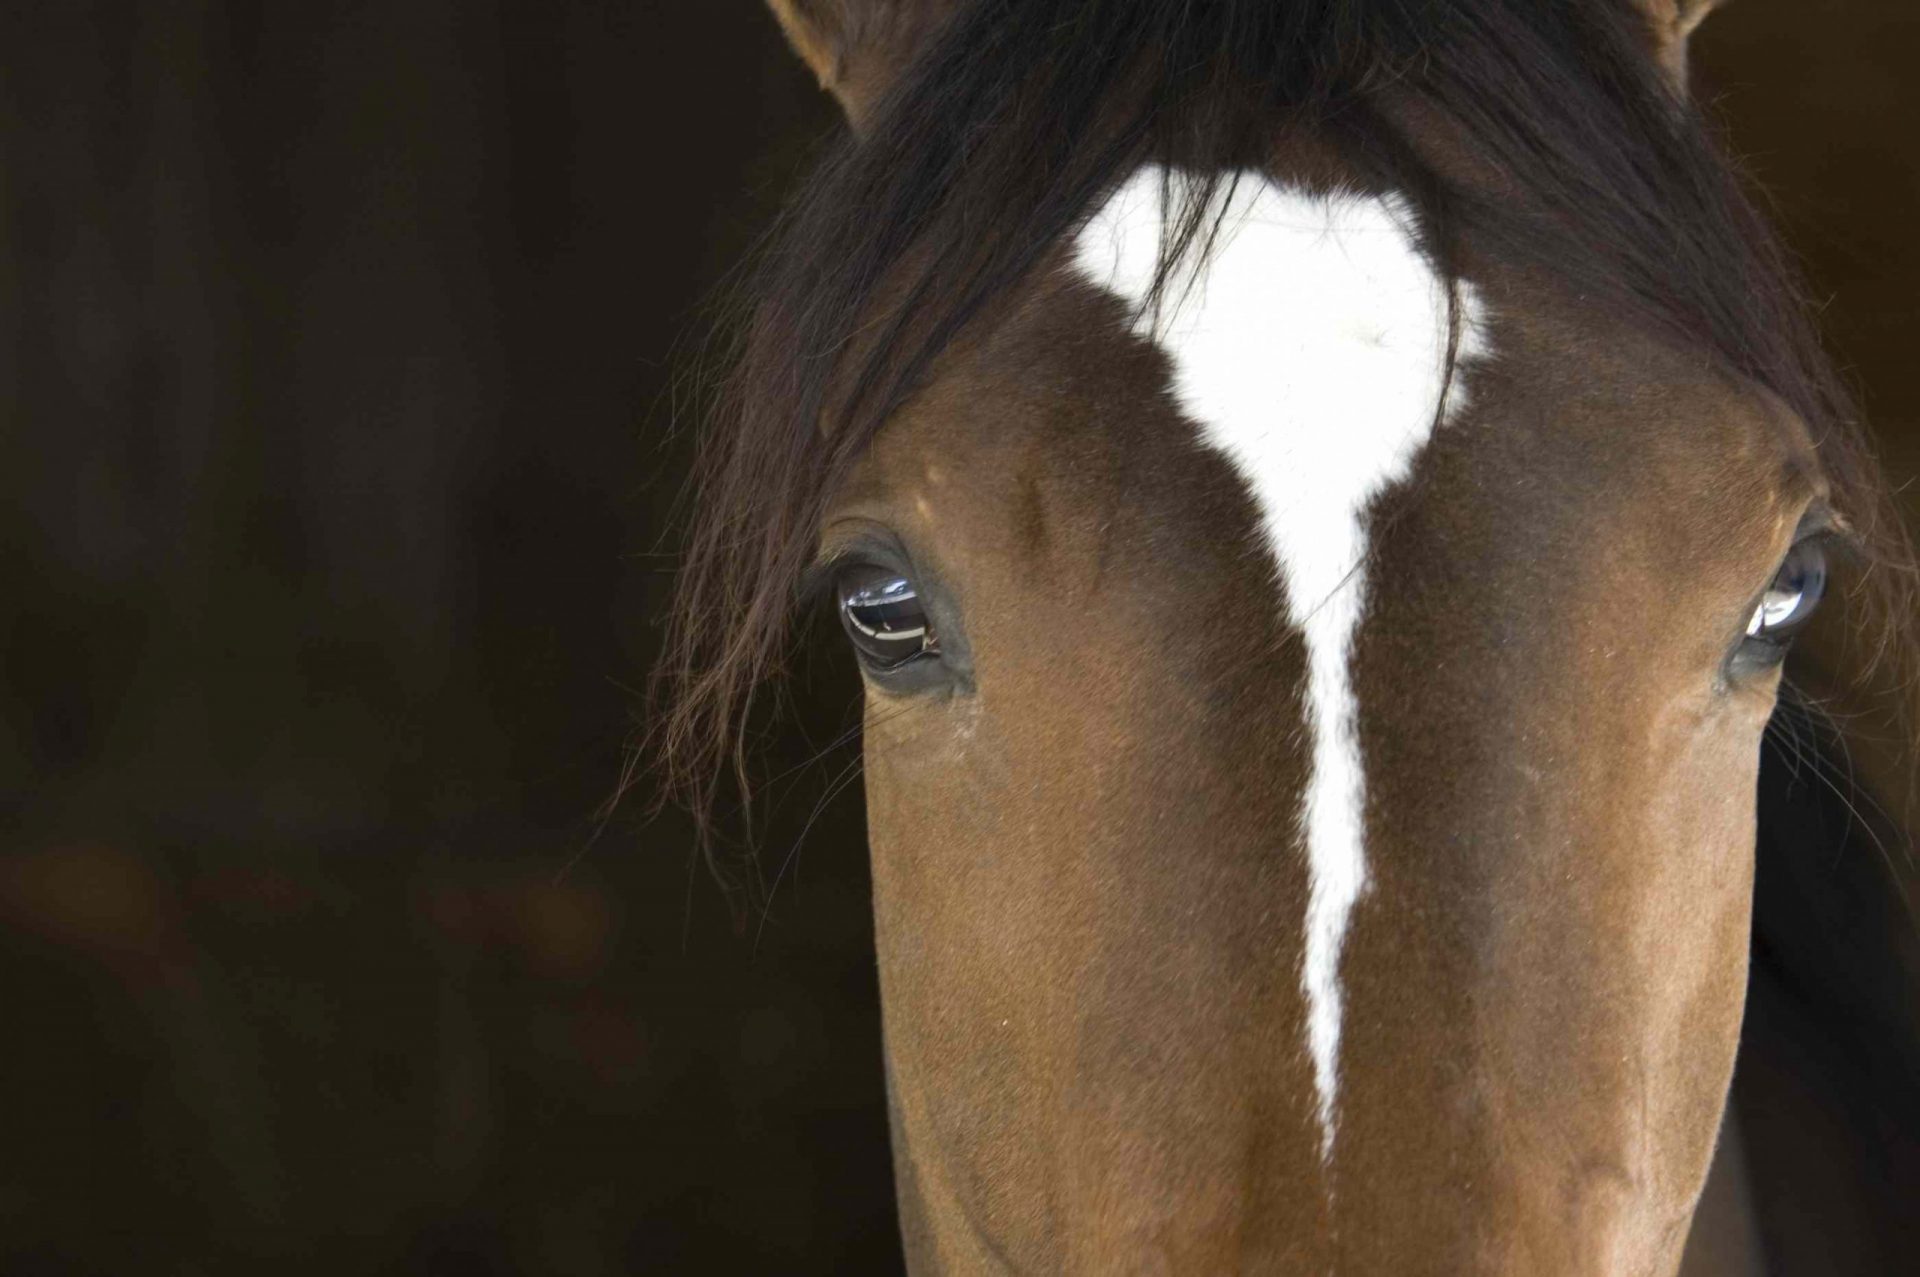 vista frontal de cerca de la cara de un caballo que muestra los grandes ojos separados a los lados de la cabeza